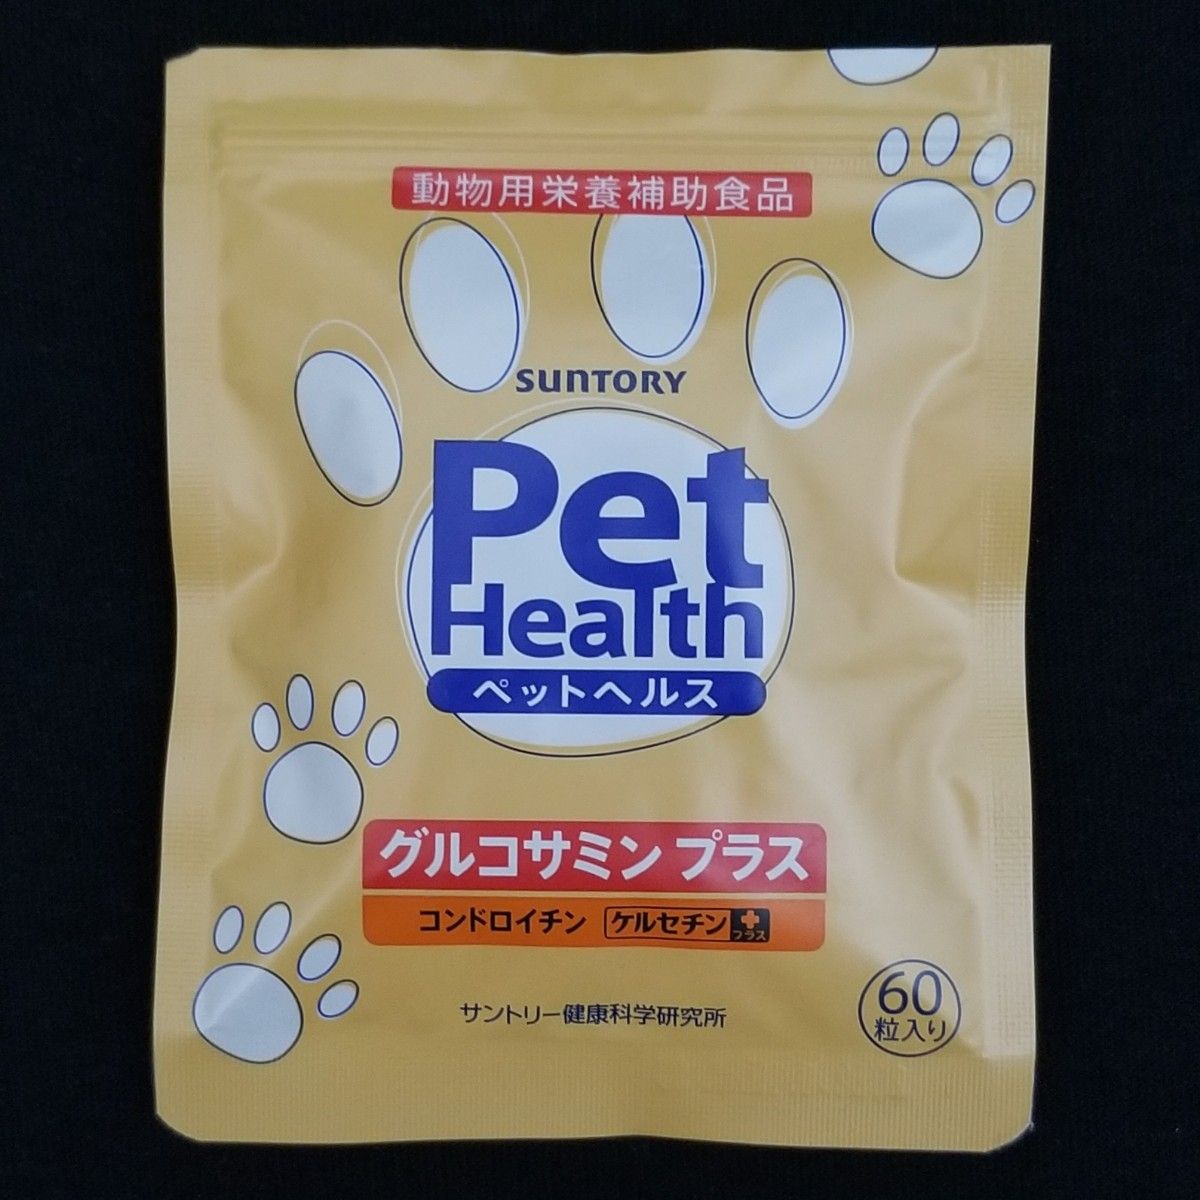 PetHealth ペットヘルス グルコサミン プラス コンドロイチン ケルセチン プラス 動物用栄養補助食品 サントリー 